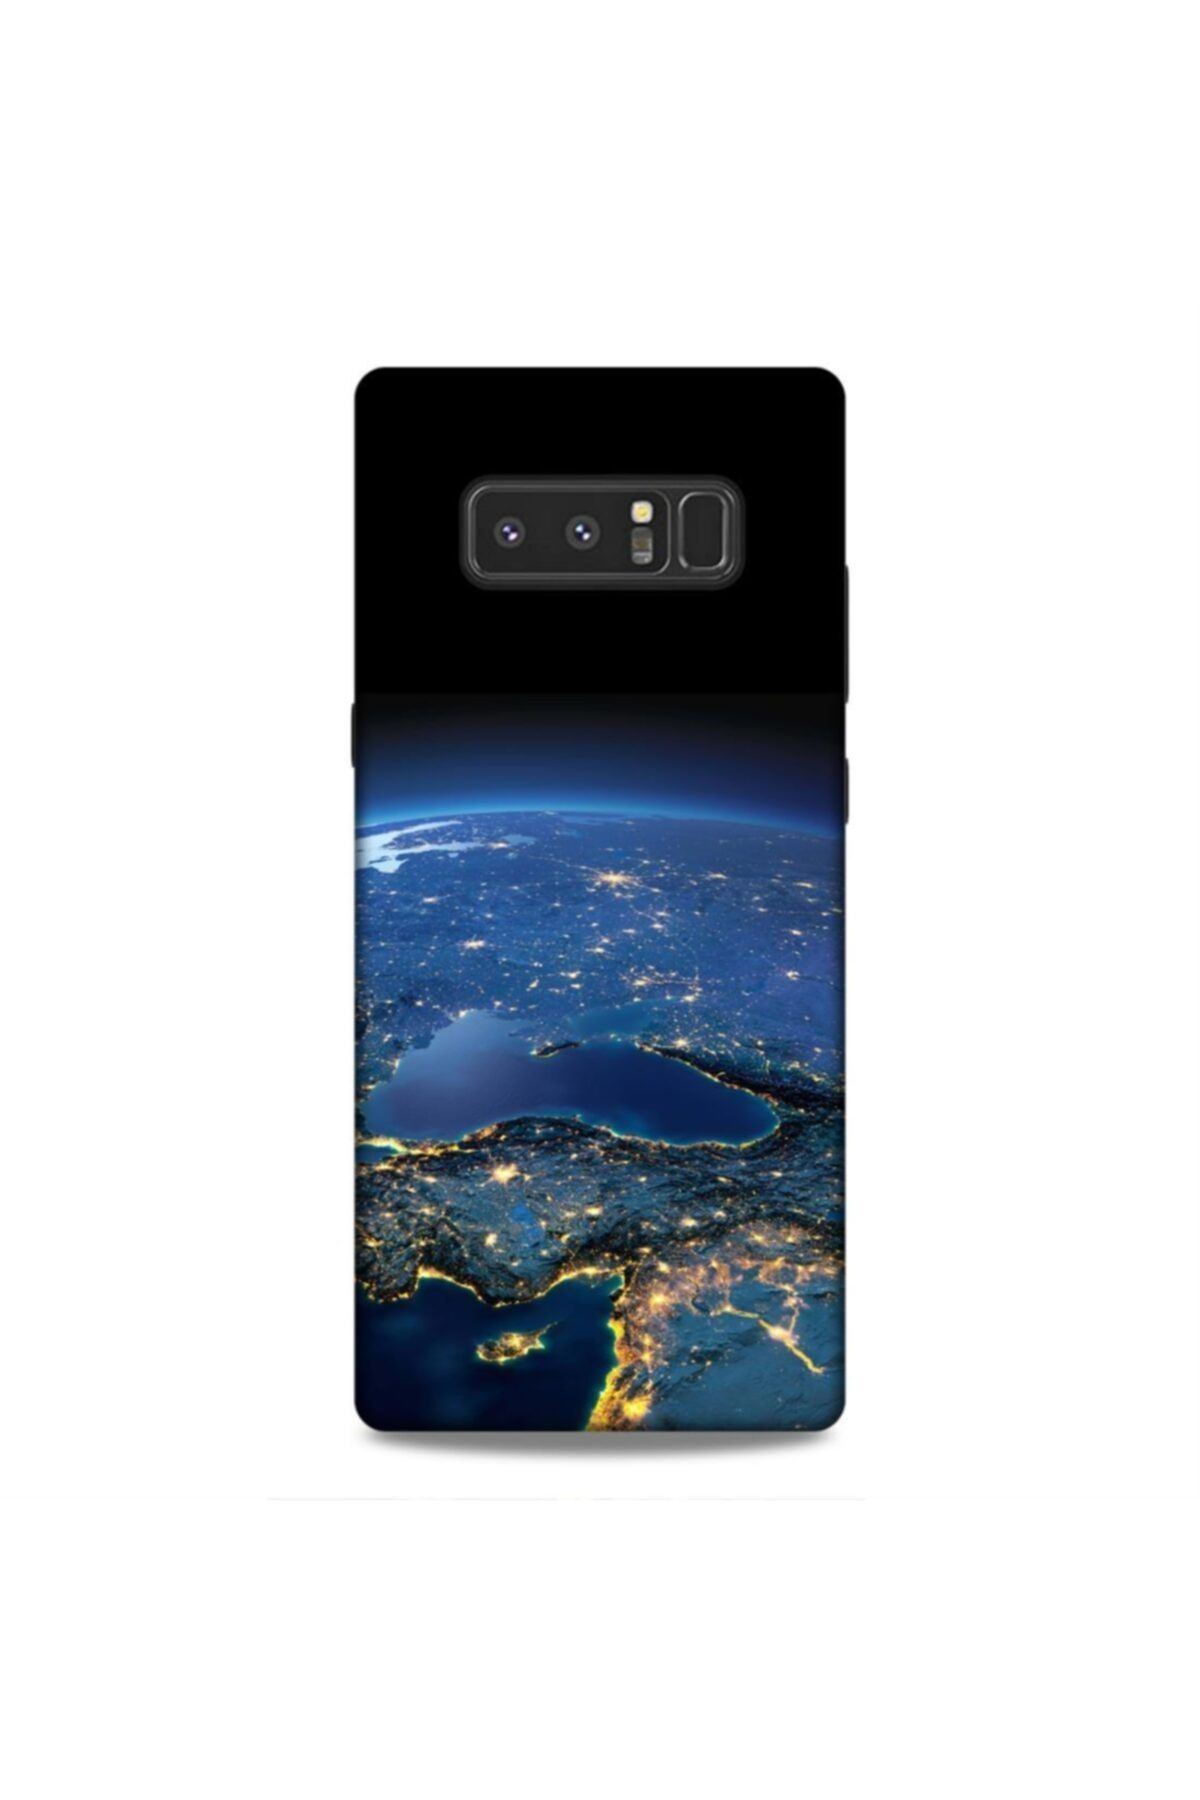 Pickcase Samsung Galaxy Note 8 Kılıf Desenli Arka Kapak Türkiye